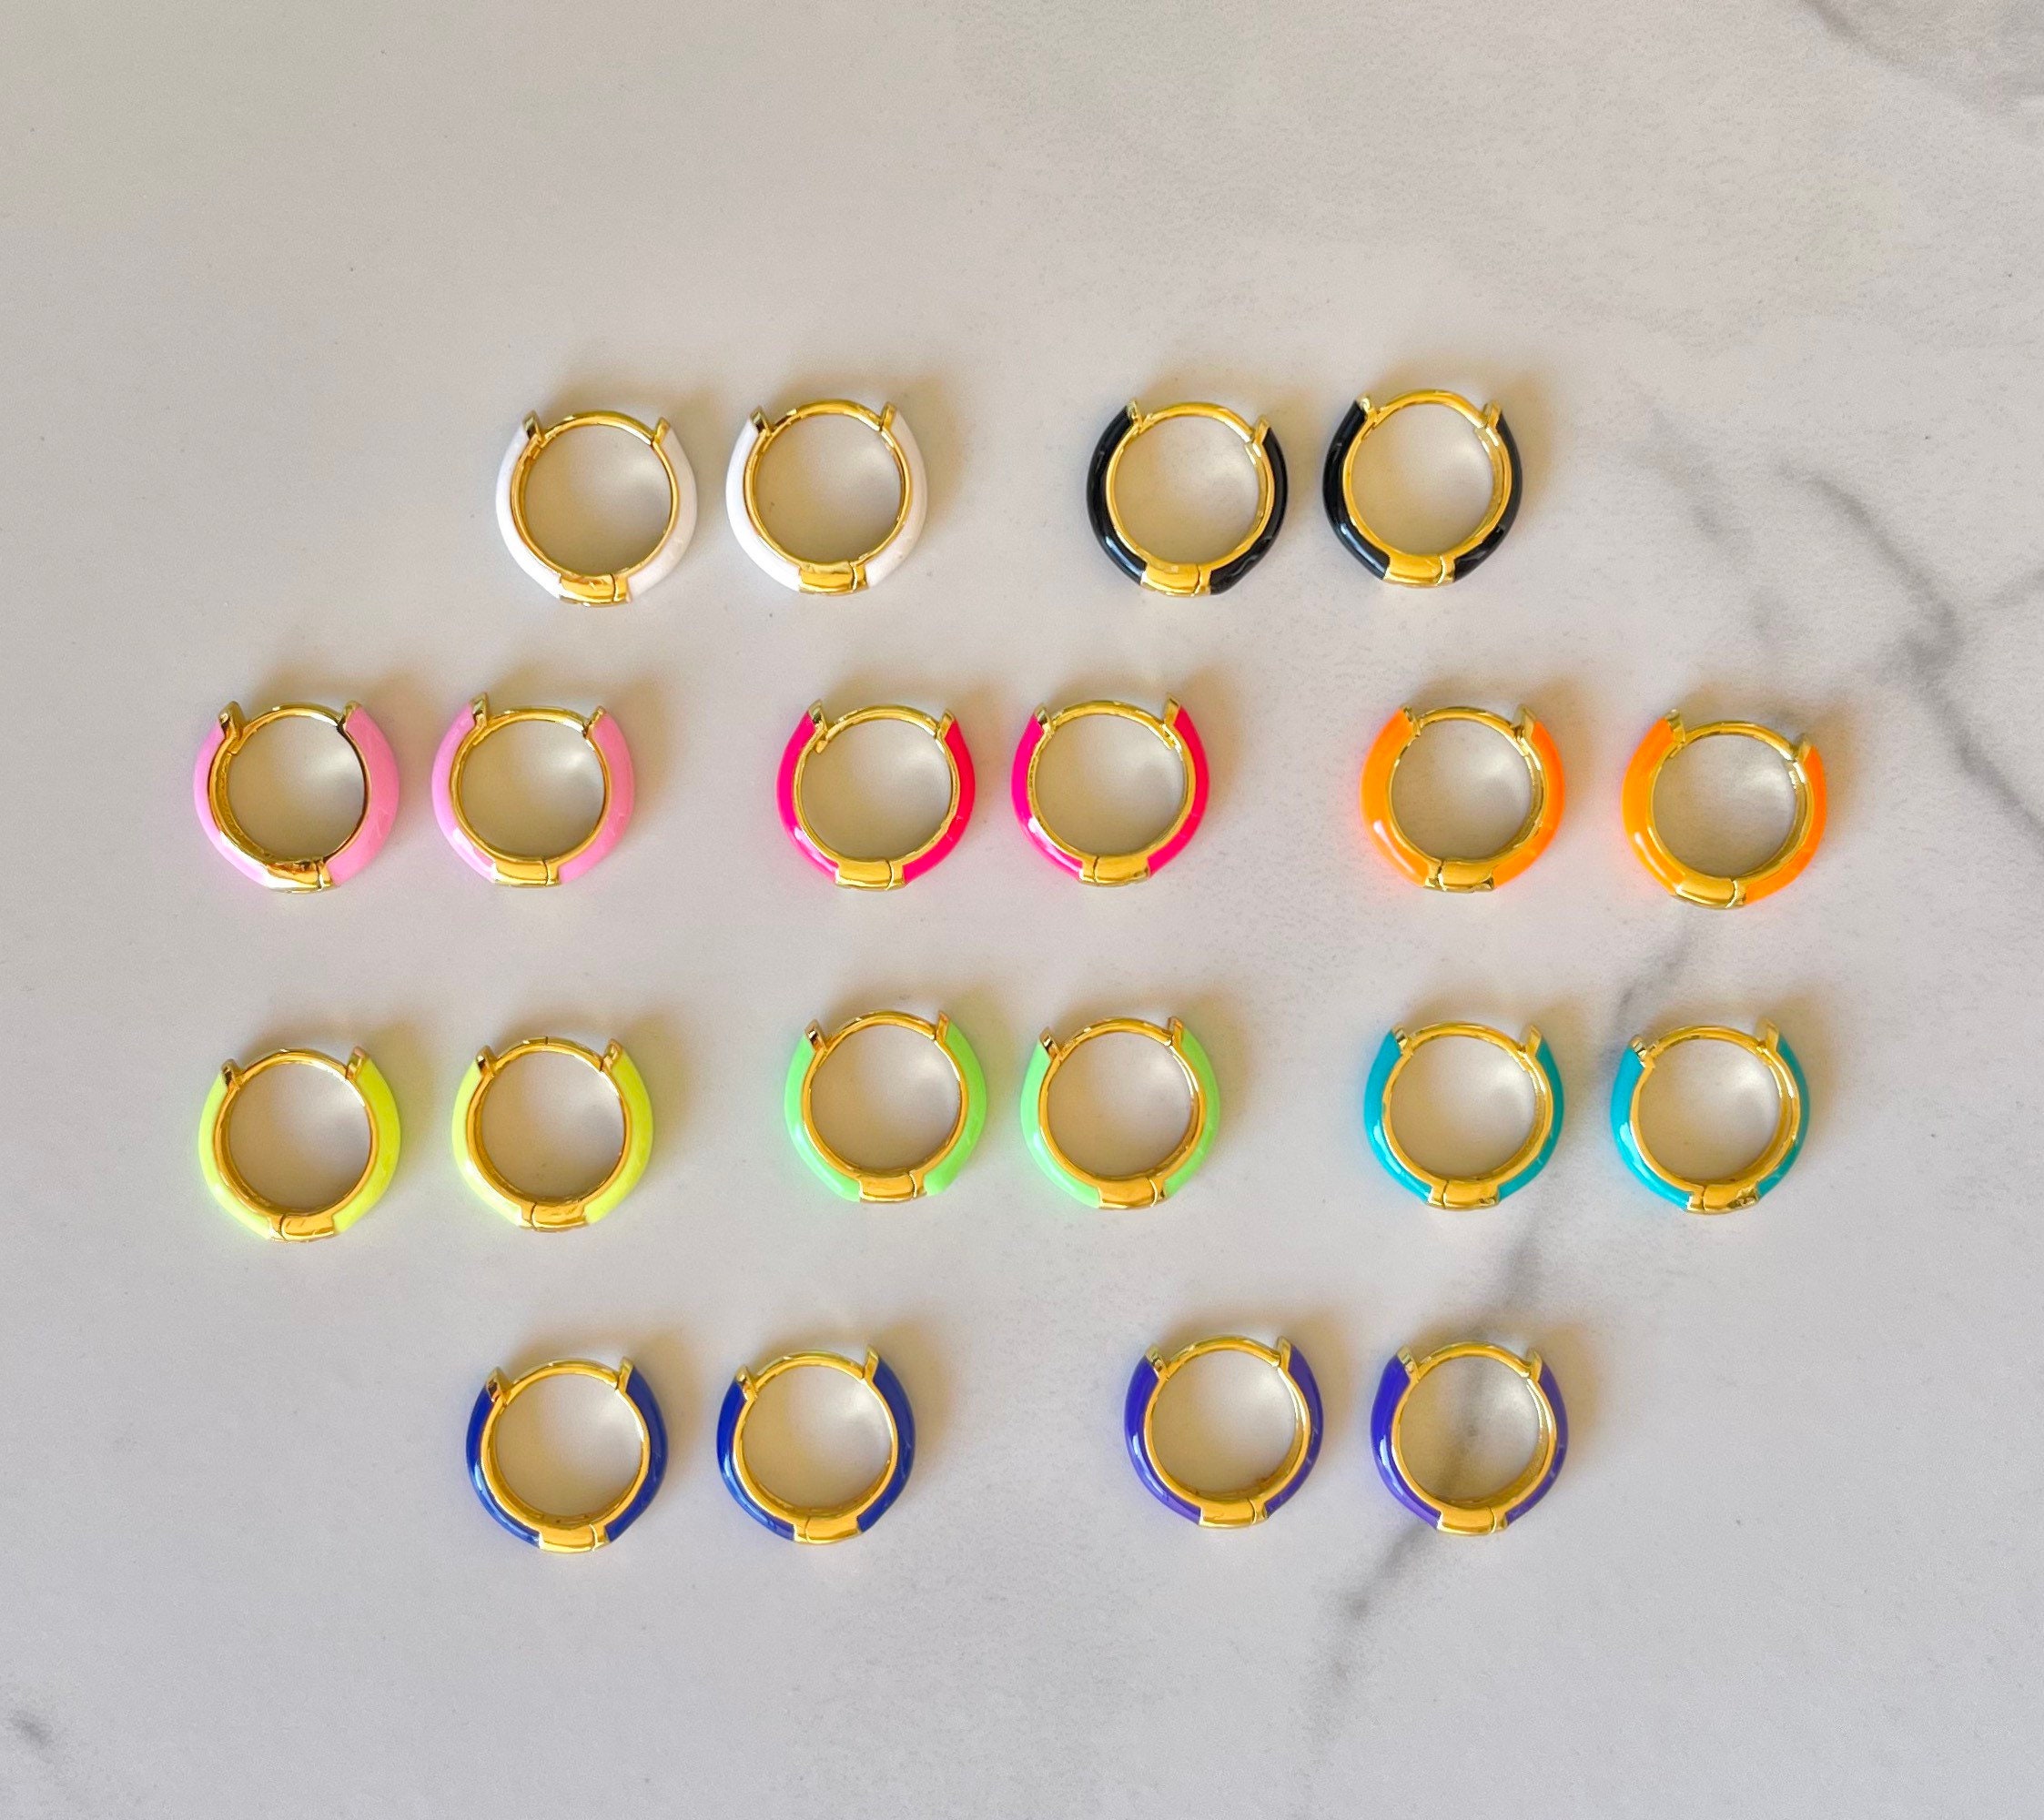 Neon Enamel Hoop Earrings Gold-plated Colorful Hoops - Etsy